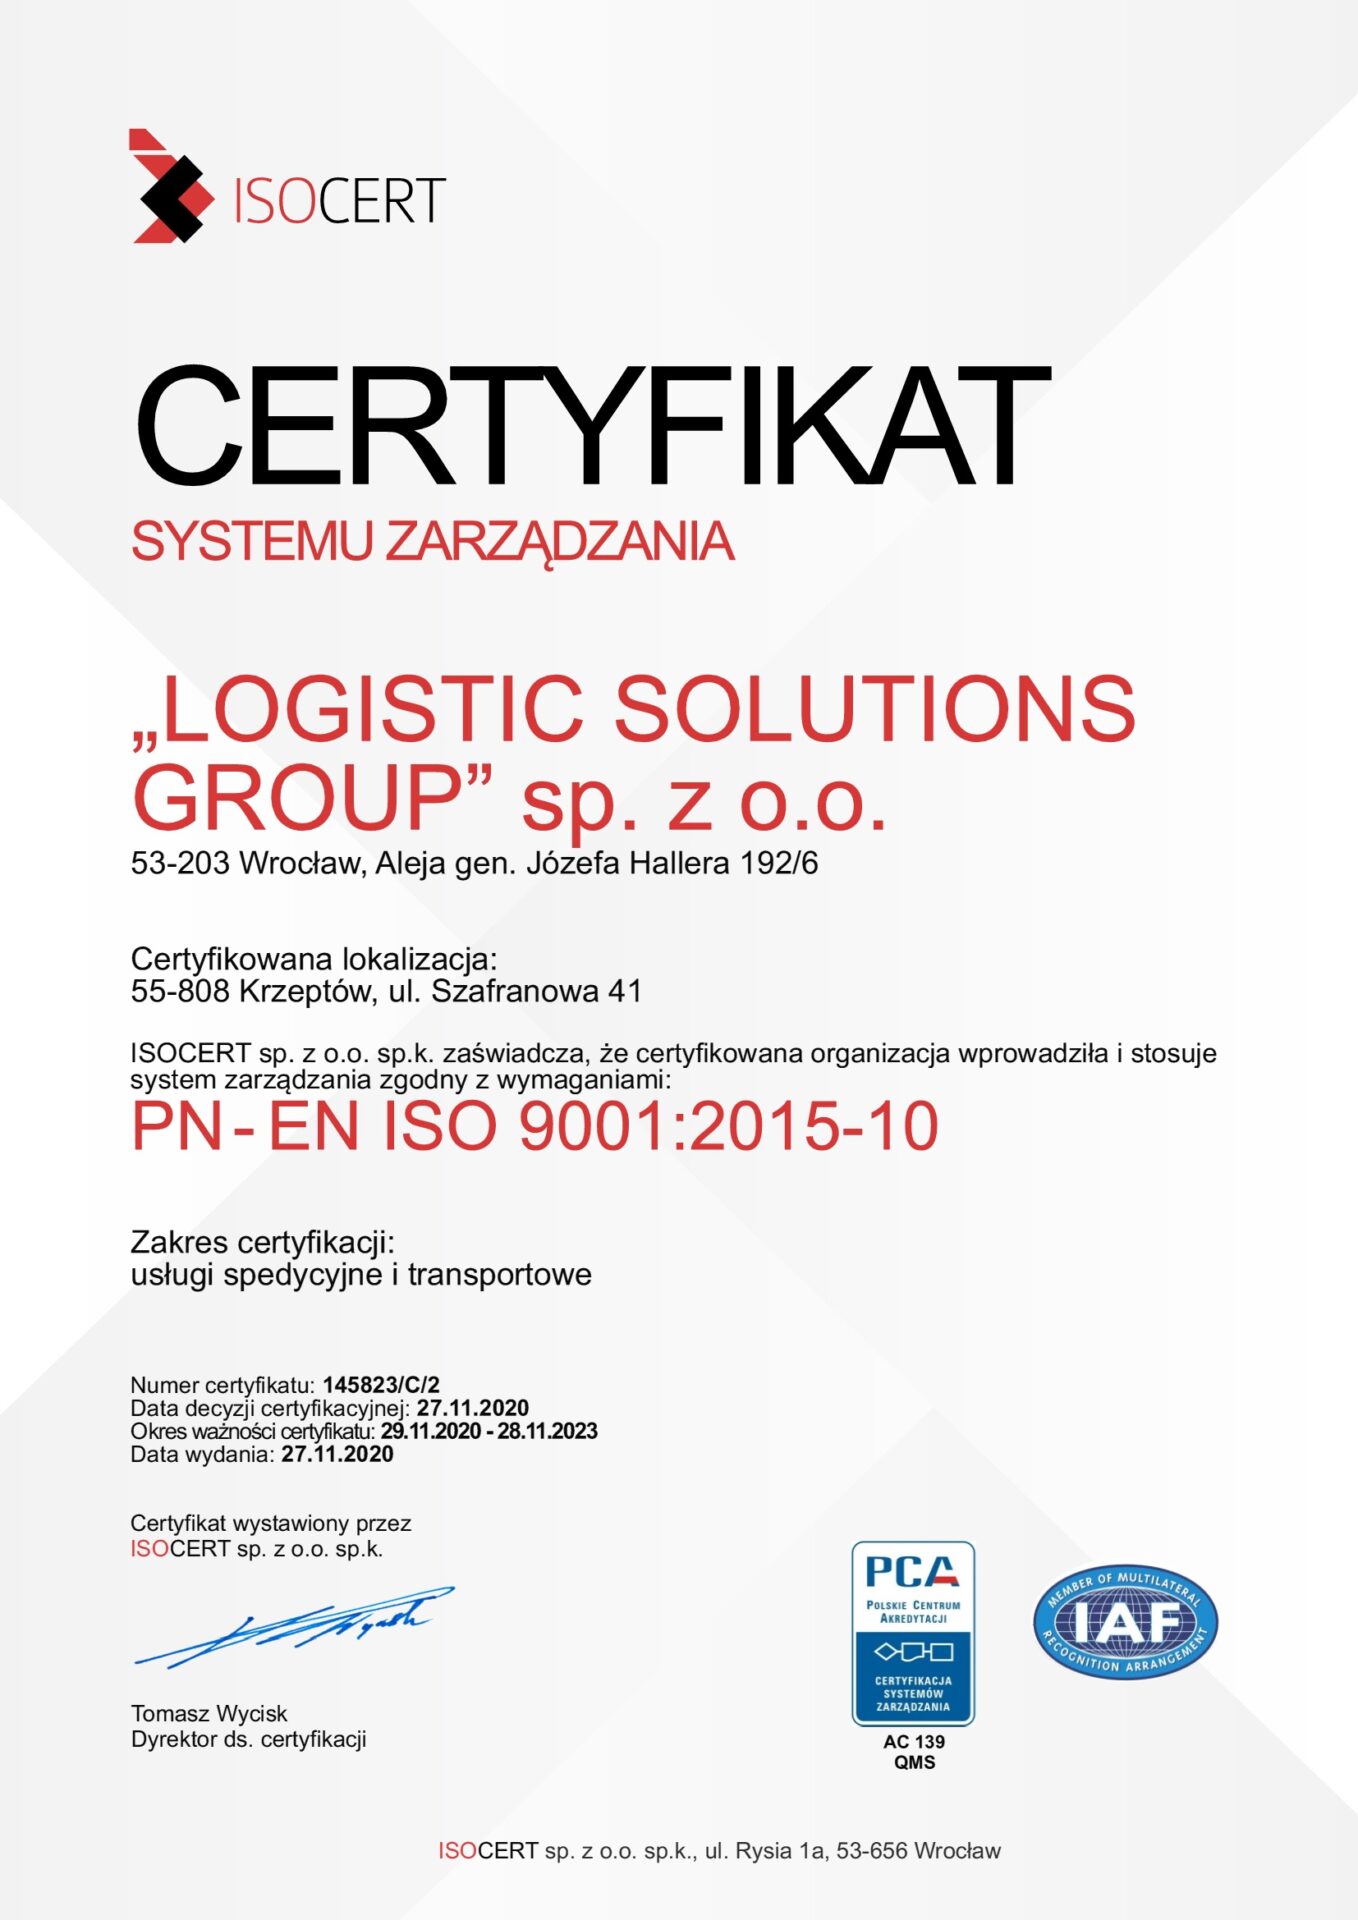 lsg_certyfikat_system_zarzadzania